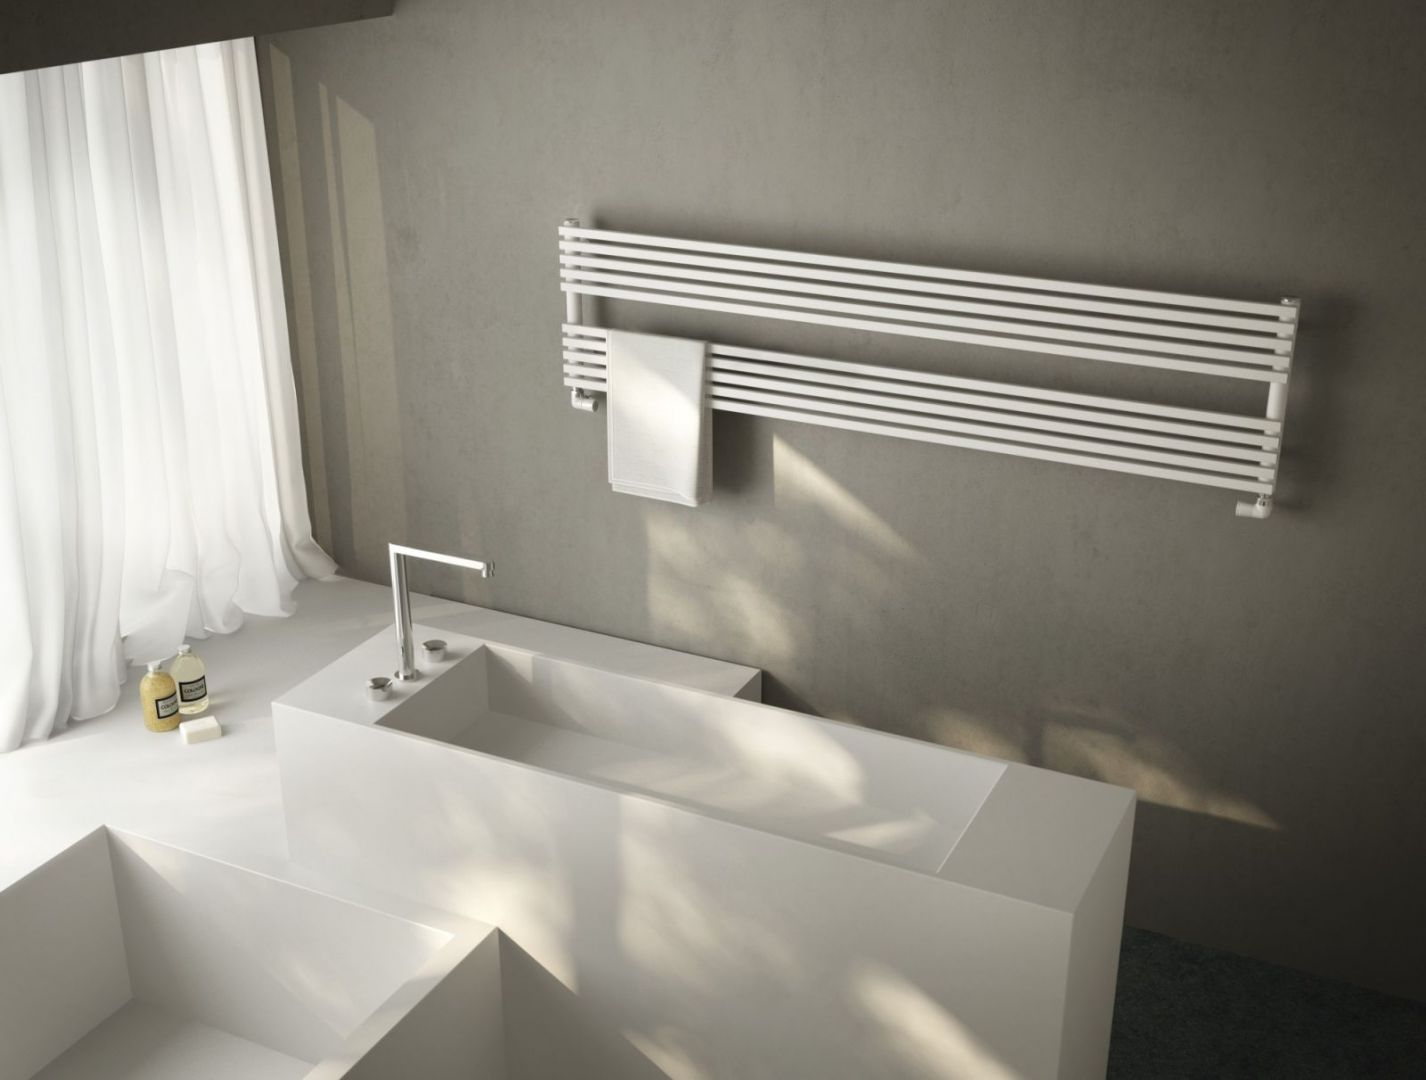 Grzejnik łazienkowy BDO firmy Antrax. Fot. Antrax/Materiały prasowe Home Concept